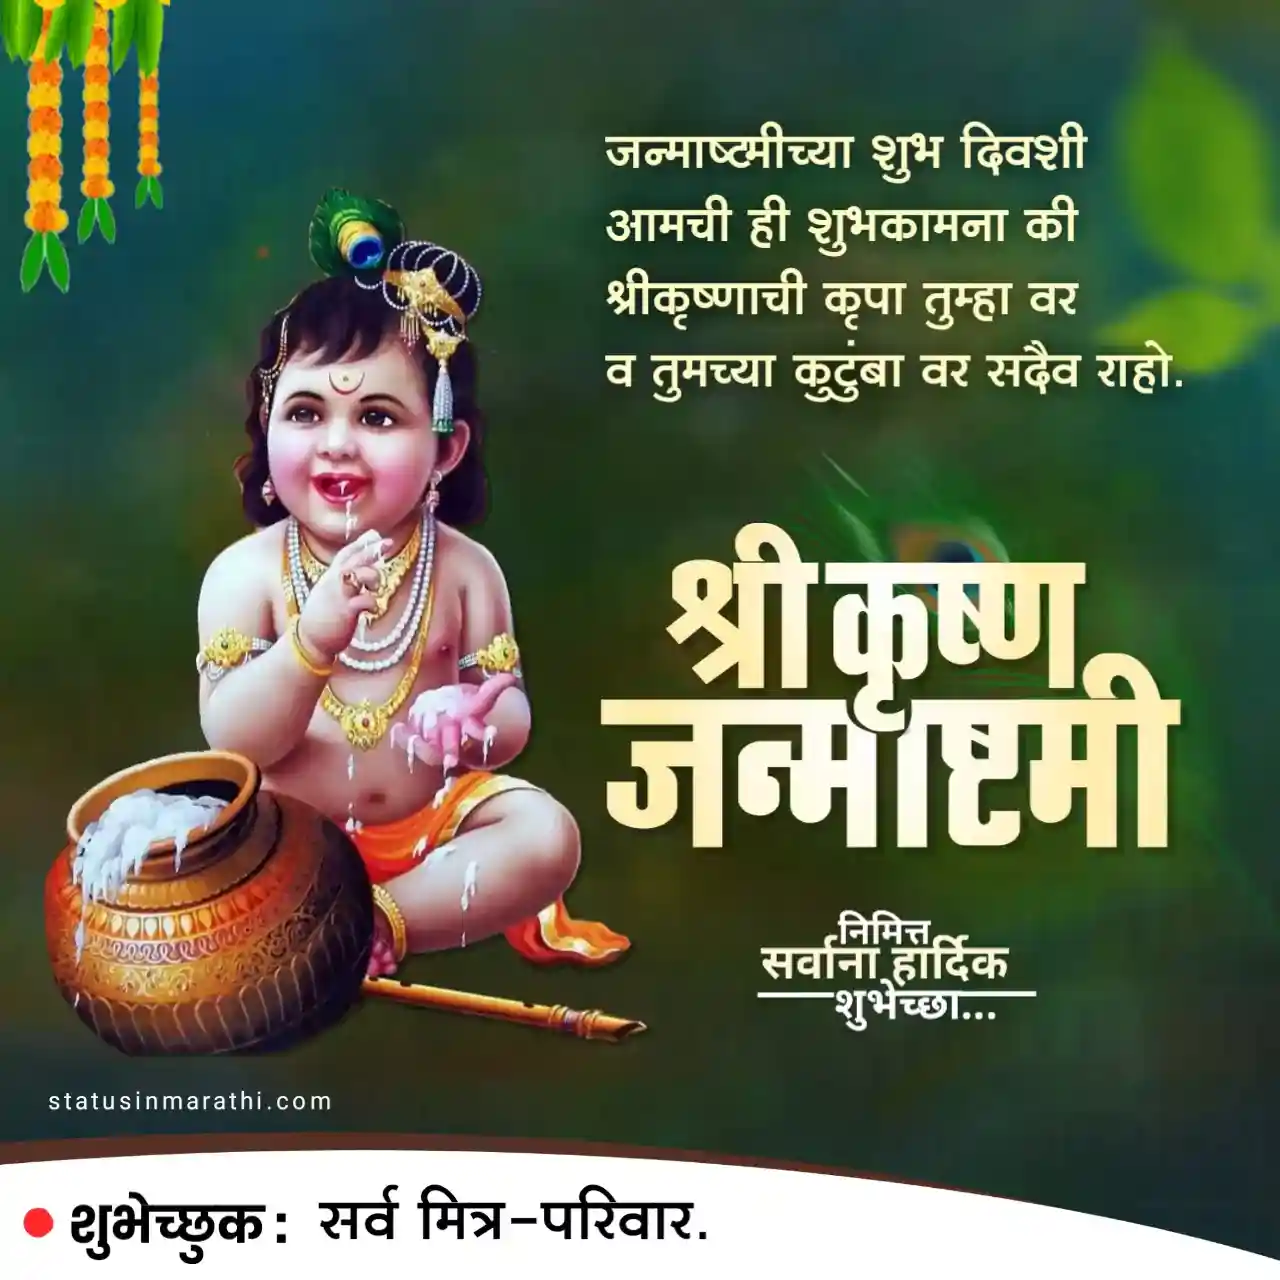 Janmashtami wishes in marathi